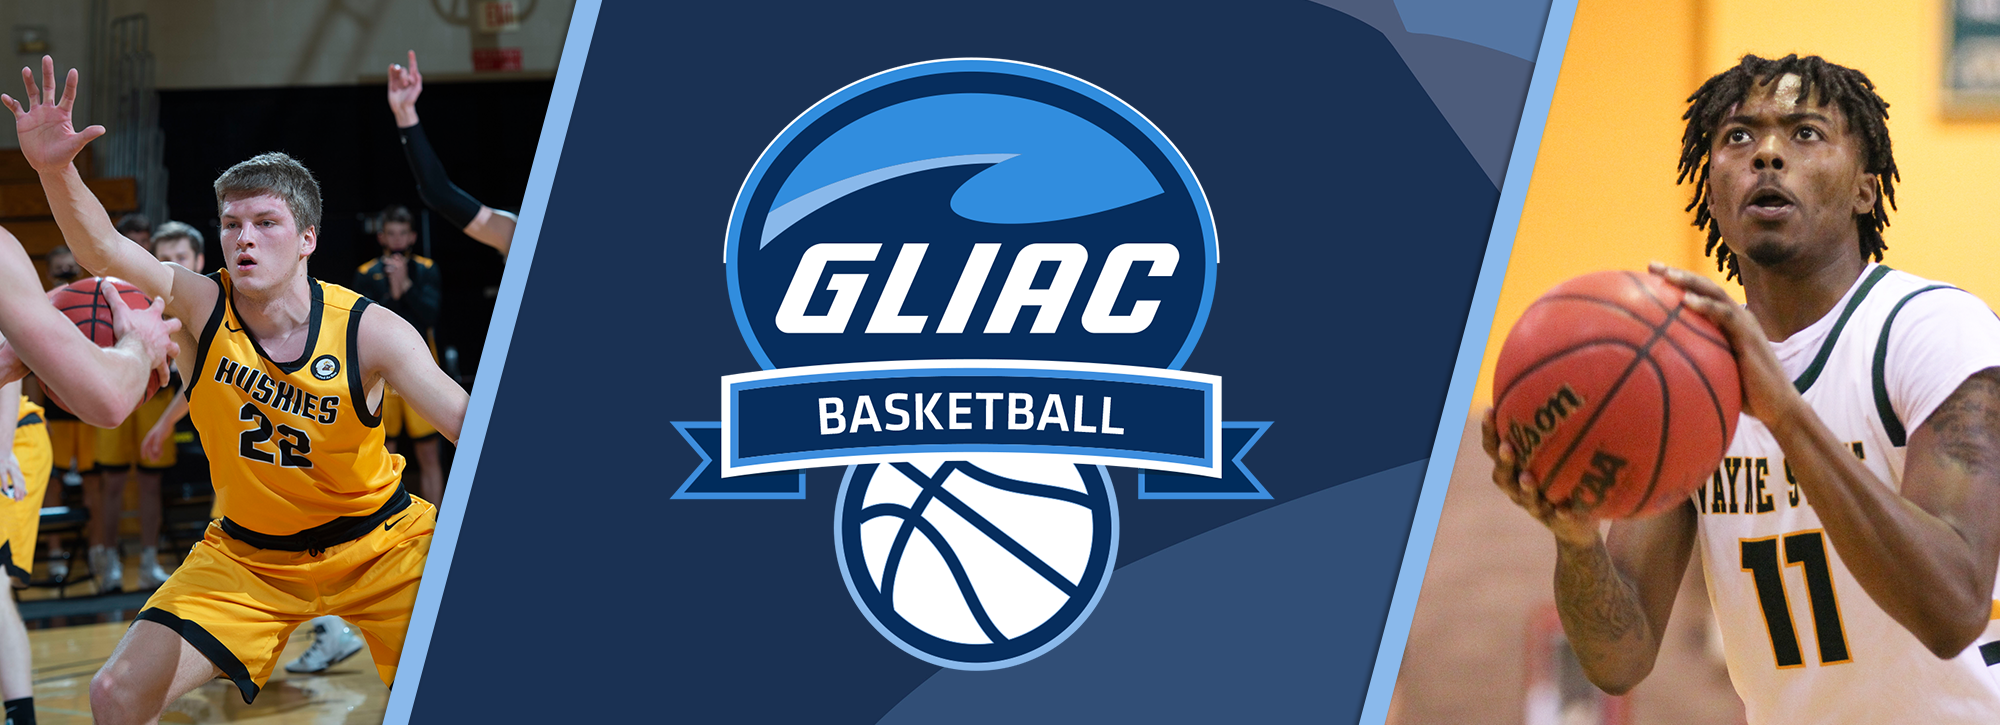 MTU's White, WSU's Neeley Earn GLIAC Men's Basketball Players of the Week